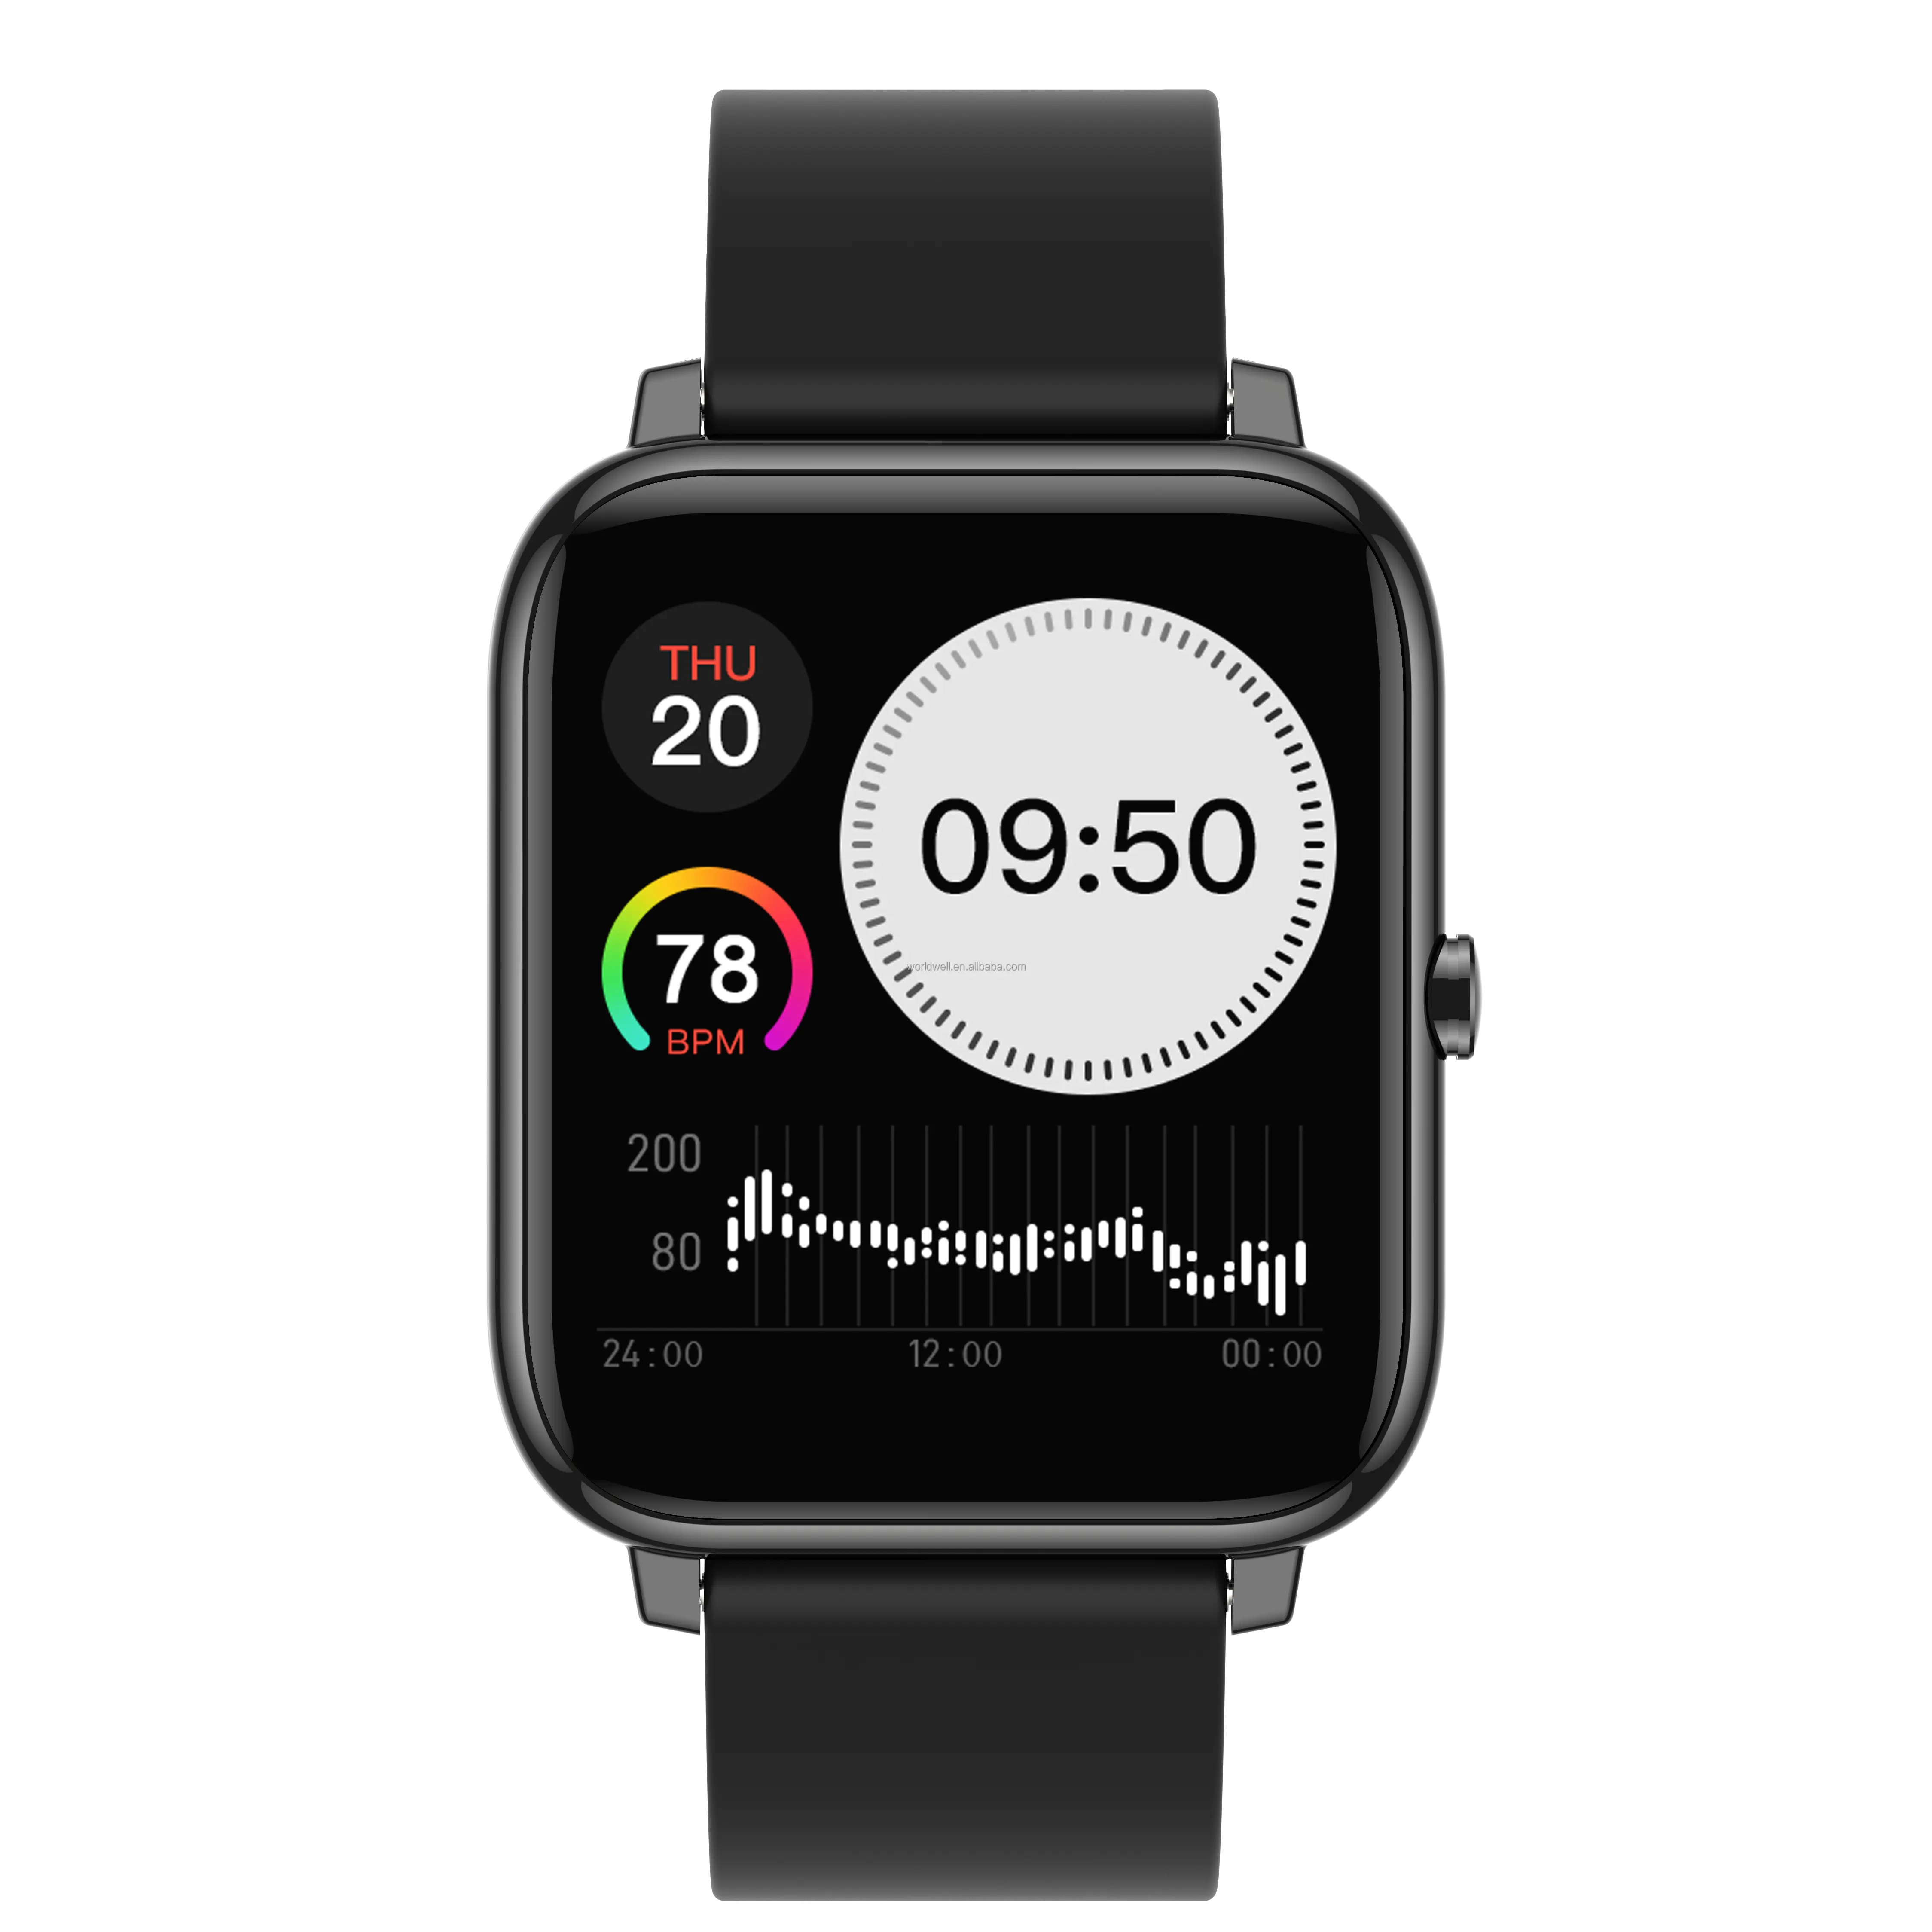 Neues Design Günstige Sport Android Smartwatch Premium Riesiger Bildschirm Elegant Dünn mit Call Reject Smart Watch mit Körper temperatur